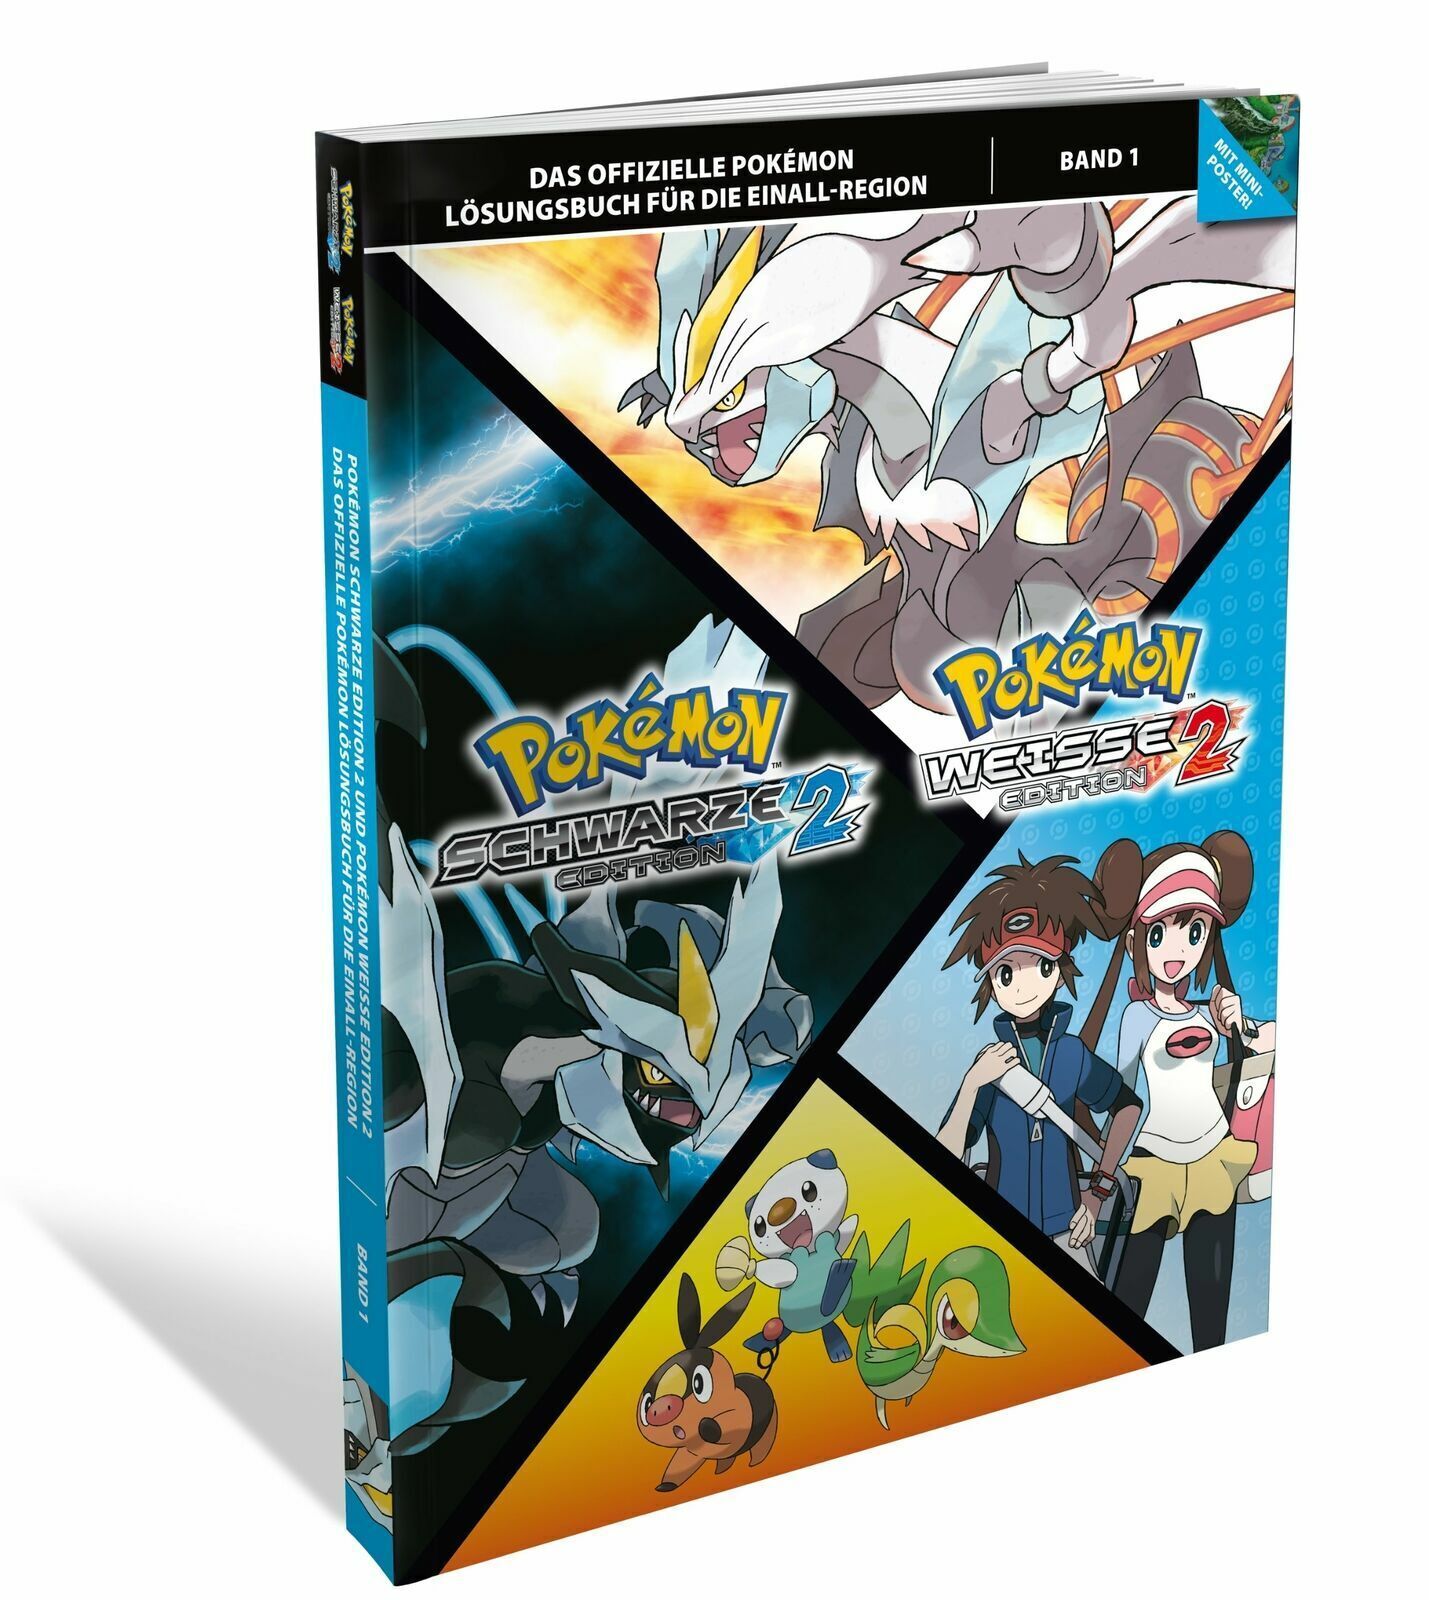 Pokémon: Schwarze Edition 2 / Pokémon: Weiße Edition 2 - Das offizielle Pokémon Lösungsbuch Band 1